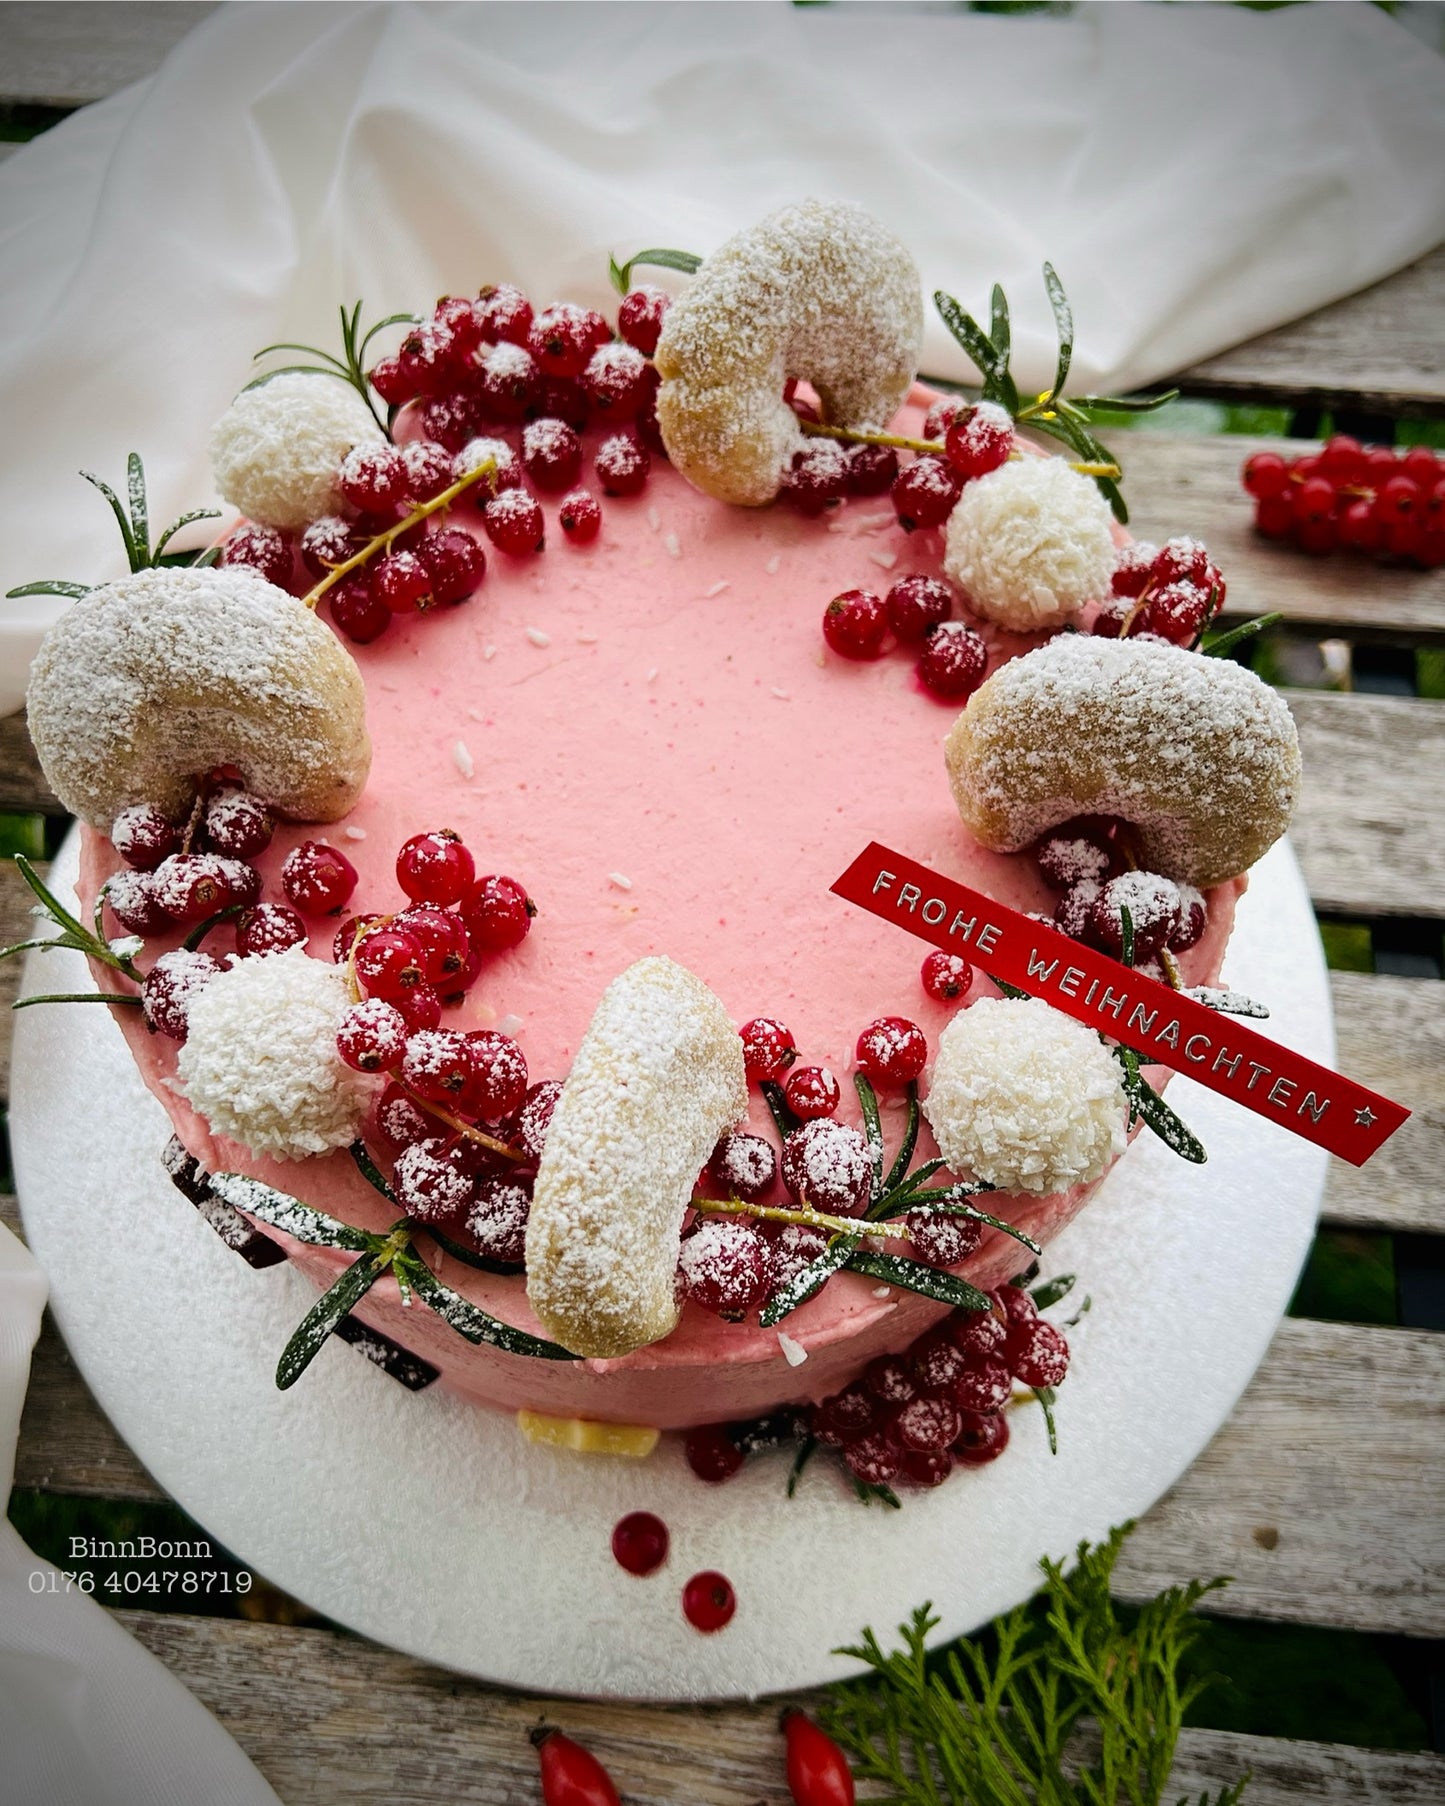 25. Torte "Pretty Christmas" mit Vanillekipferl und frischen Beeren 22 cm